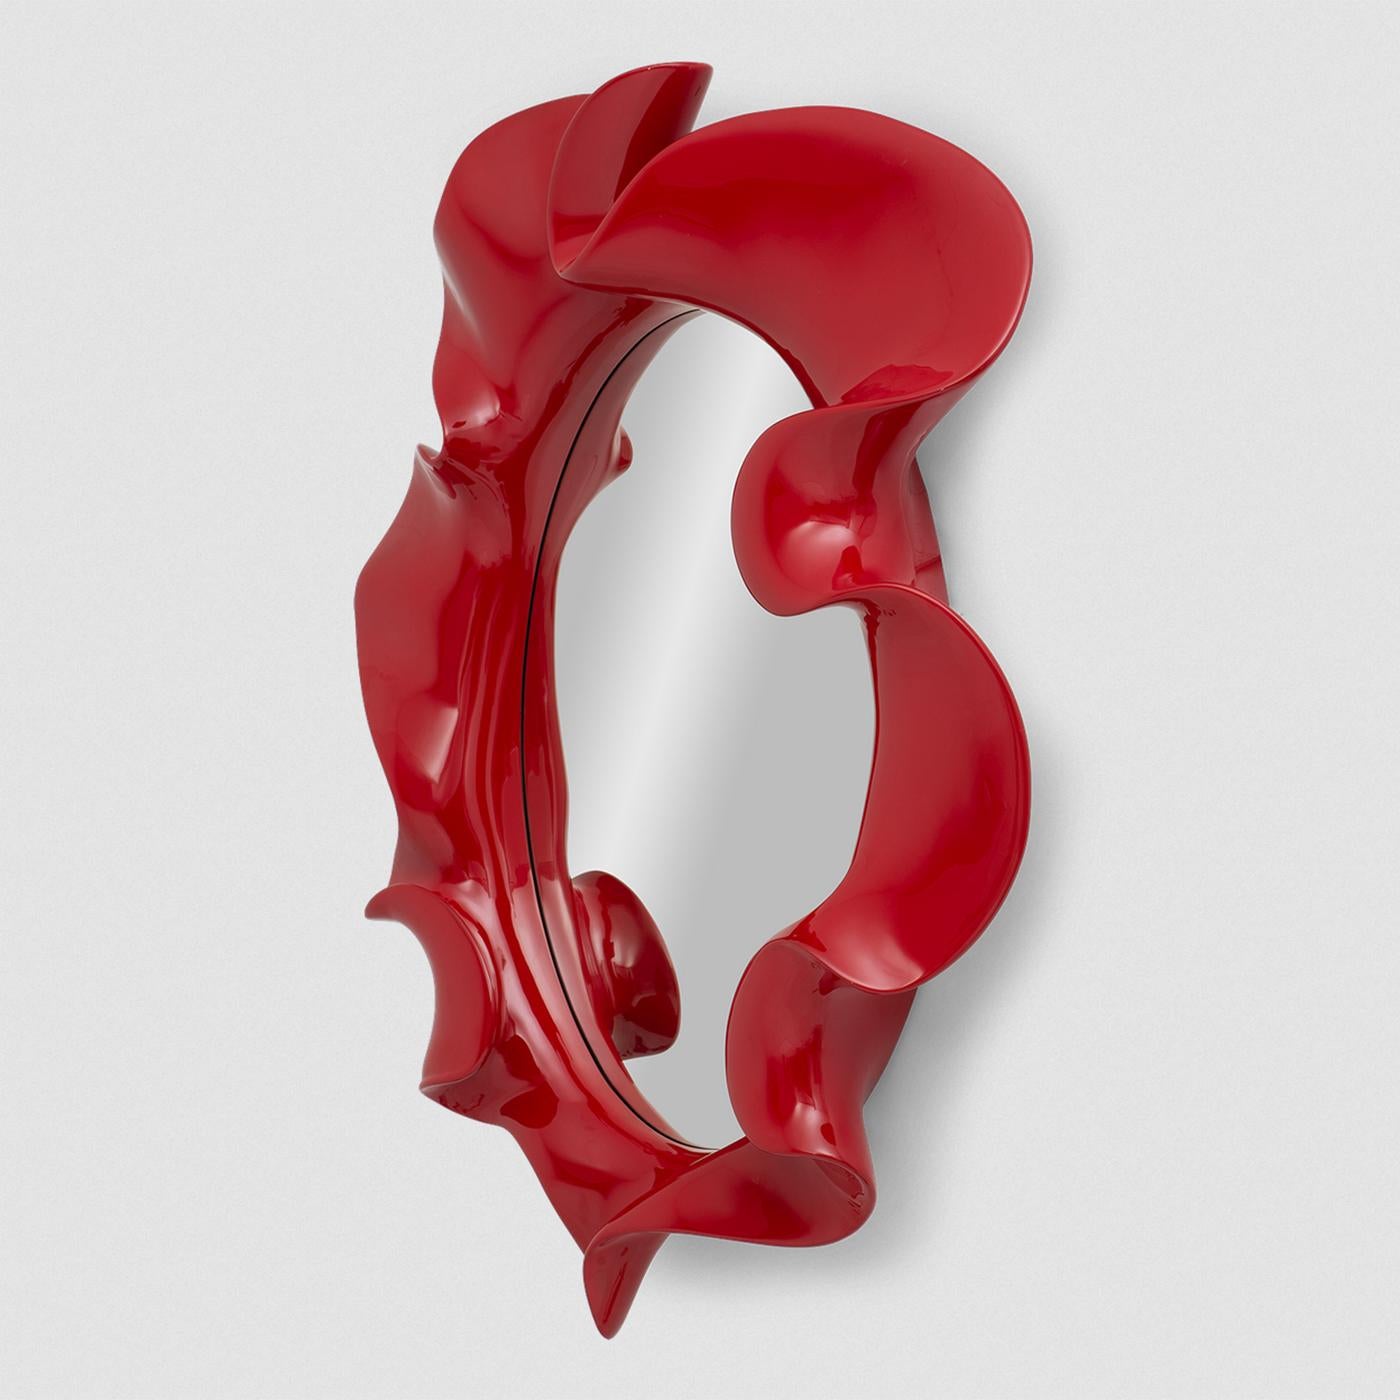 Spiegel Poppy mit massivem Mahagoni-Rahmen, handgefertigt 
Holz, rot lackiert, mit ovalem Spiegelglas. 
Auf Anfrage auch in schwarz lackierter Ausführung erhältlich.
Auf Anfrage auch erhältlich in: 
L185xD39xH253cm, Preis: 28500,00€.